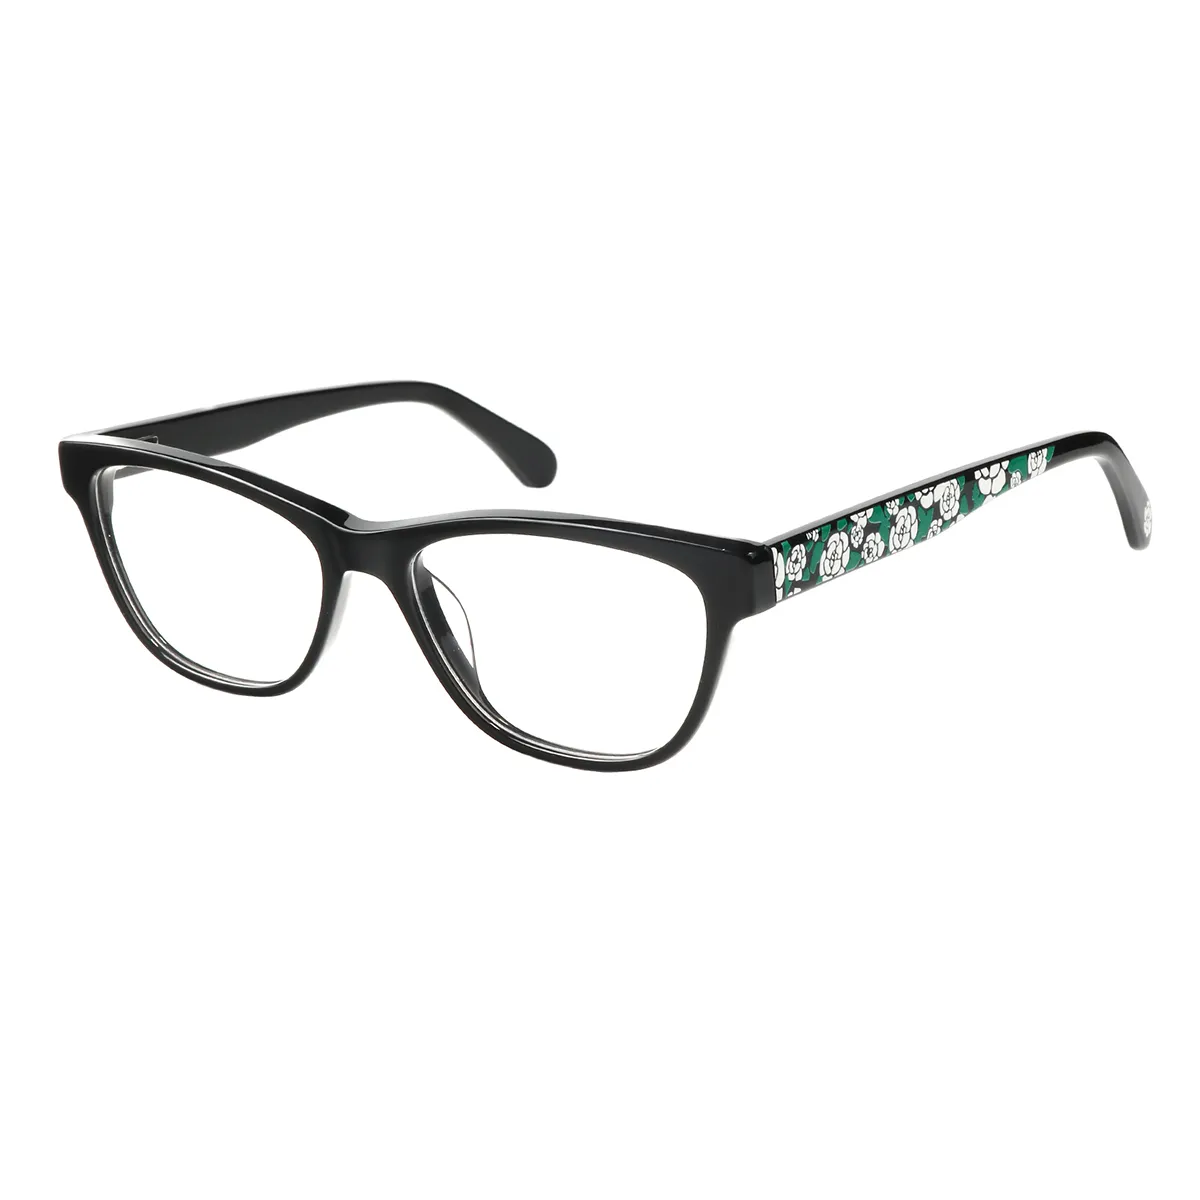 Vivien - Oval Black Glasses for Women